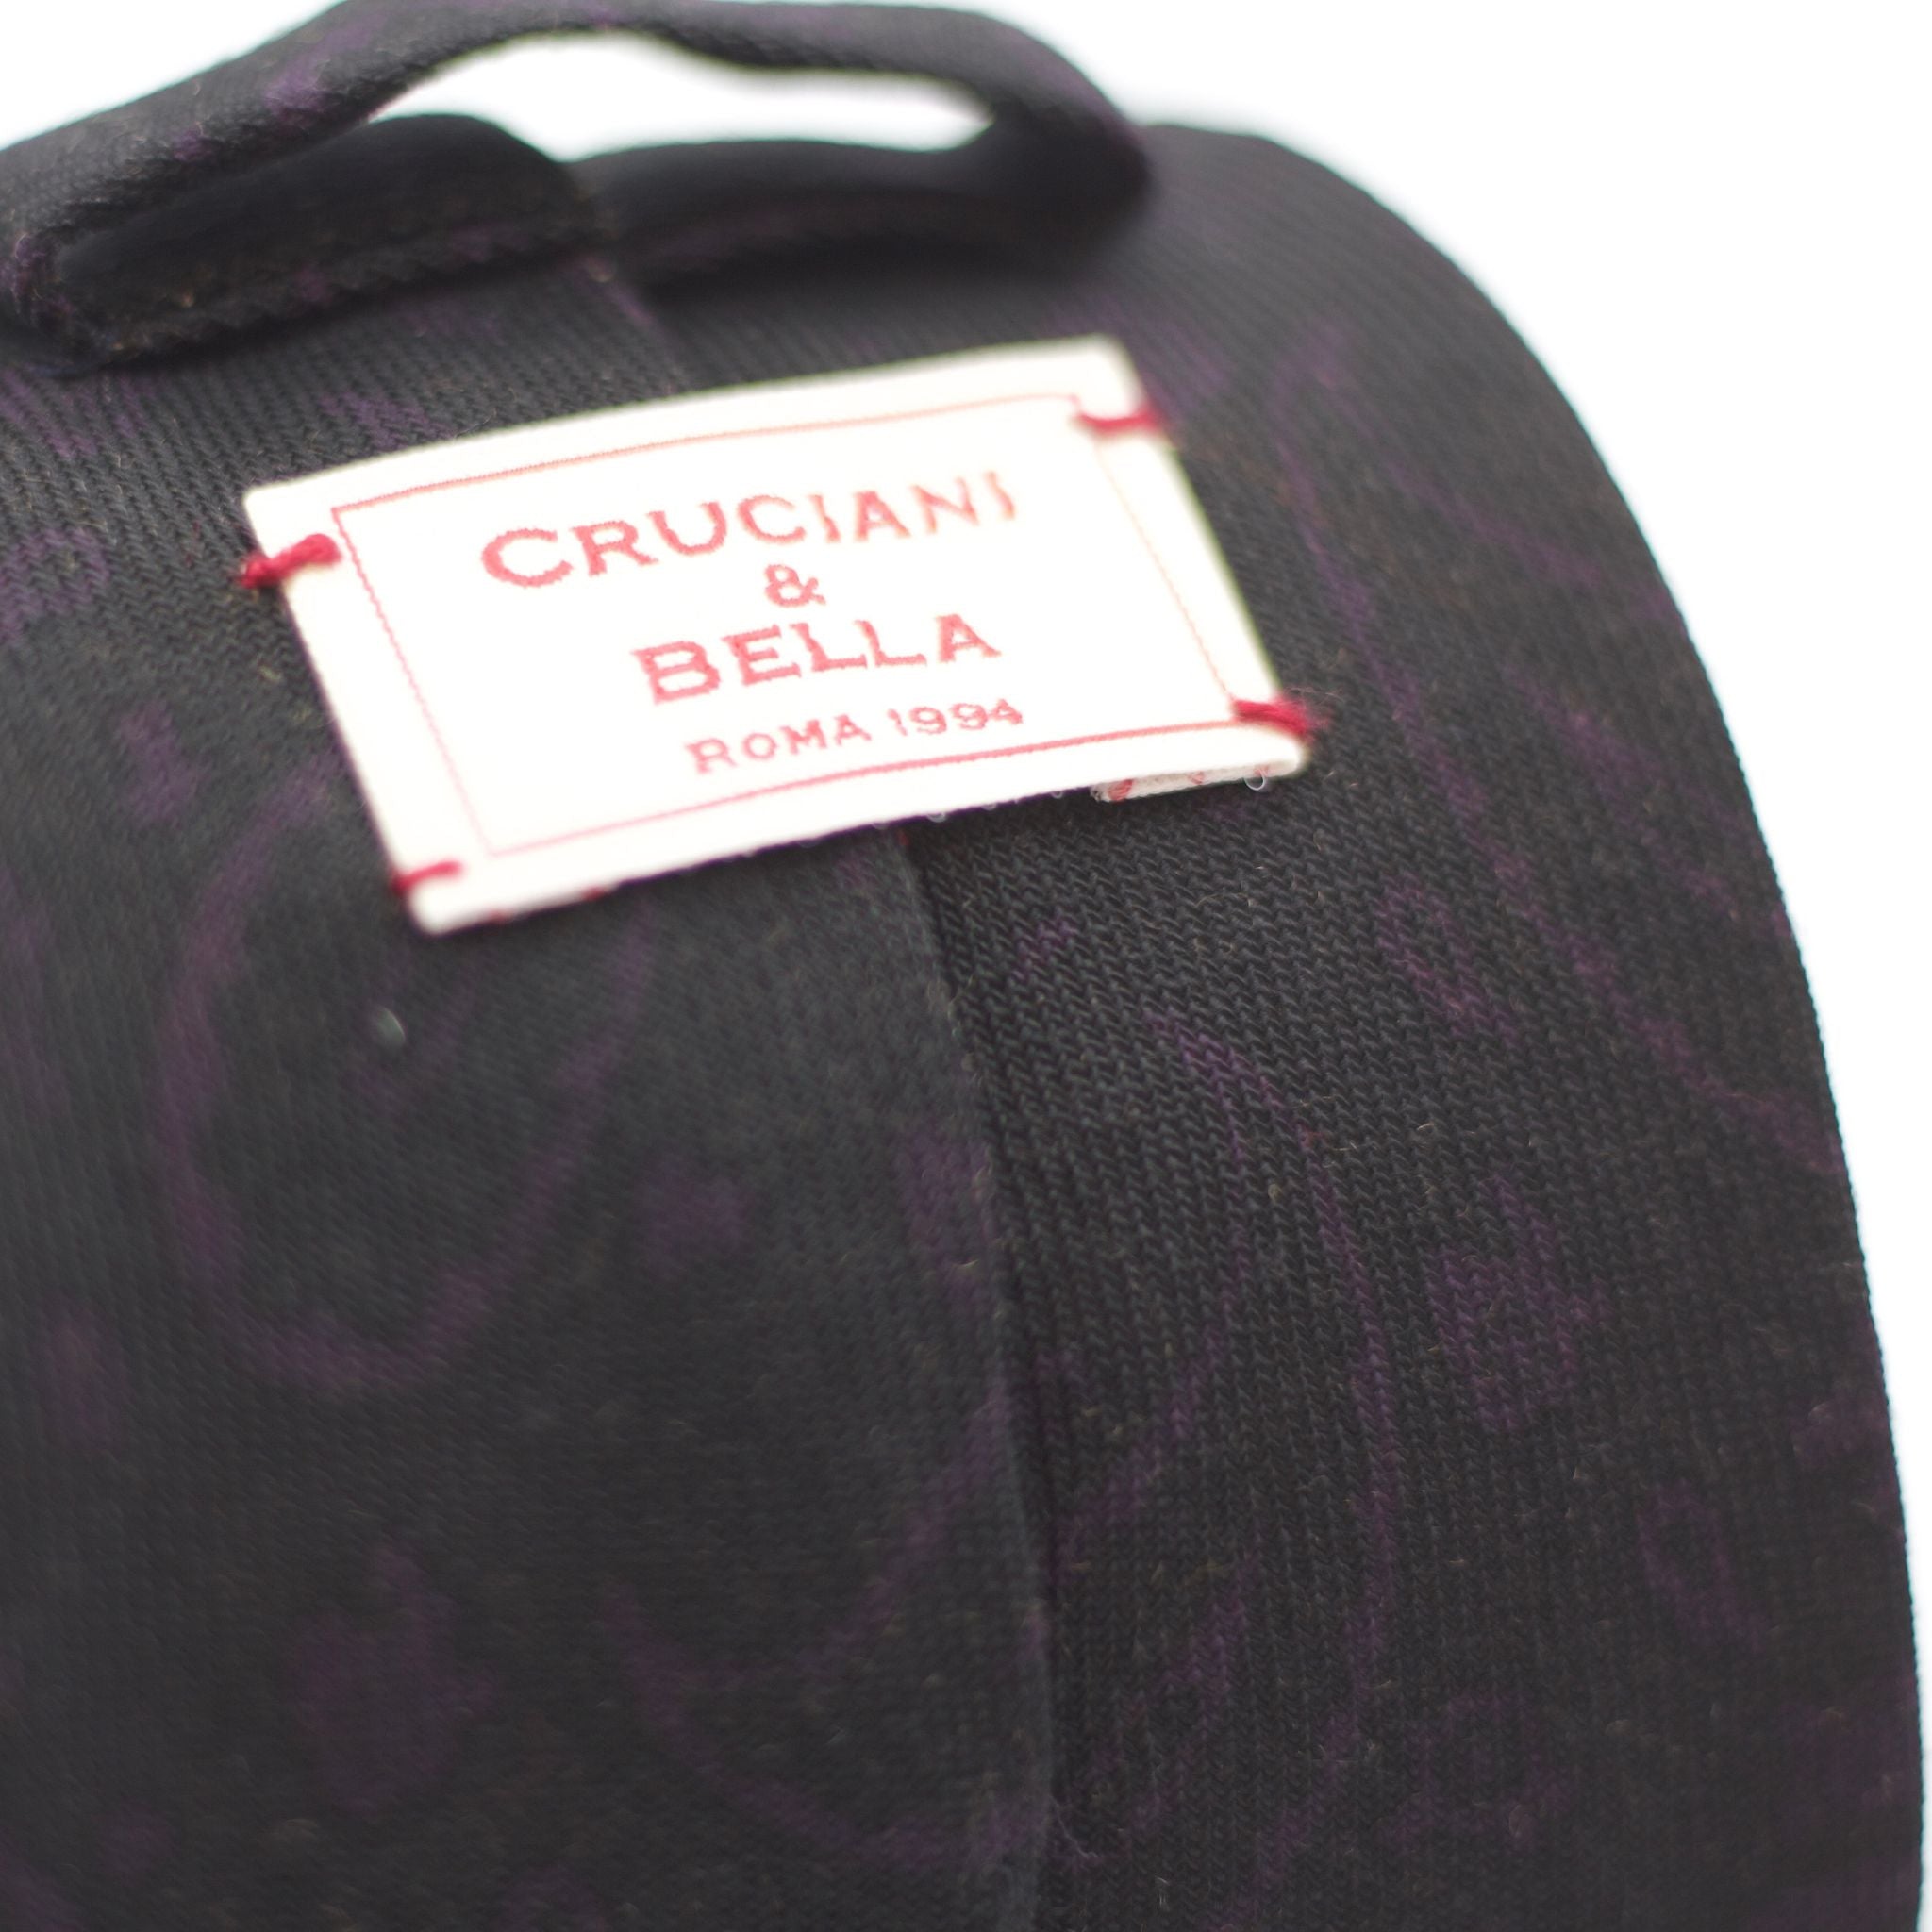 Cruciani & Bella 100%  Printed Wool  Unlined Hand rolled blades Dark Green/Black, PurplePaisley Motif Tie  Handmade in Italy 8 cm x 150 cm #5986